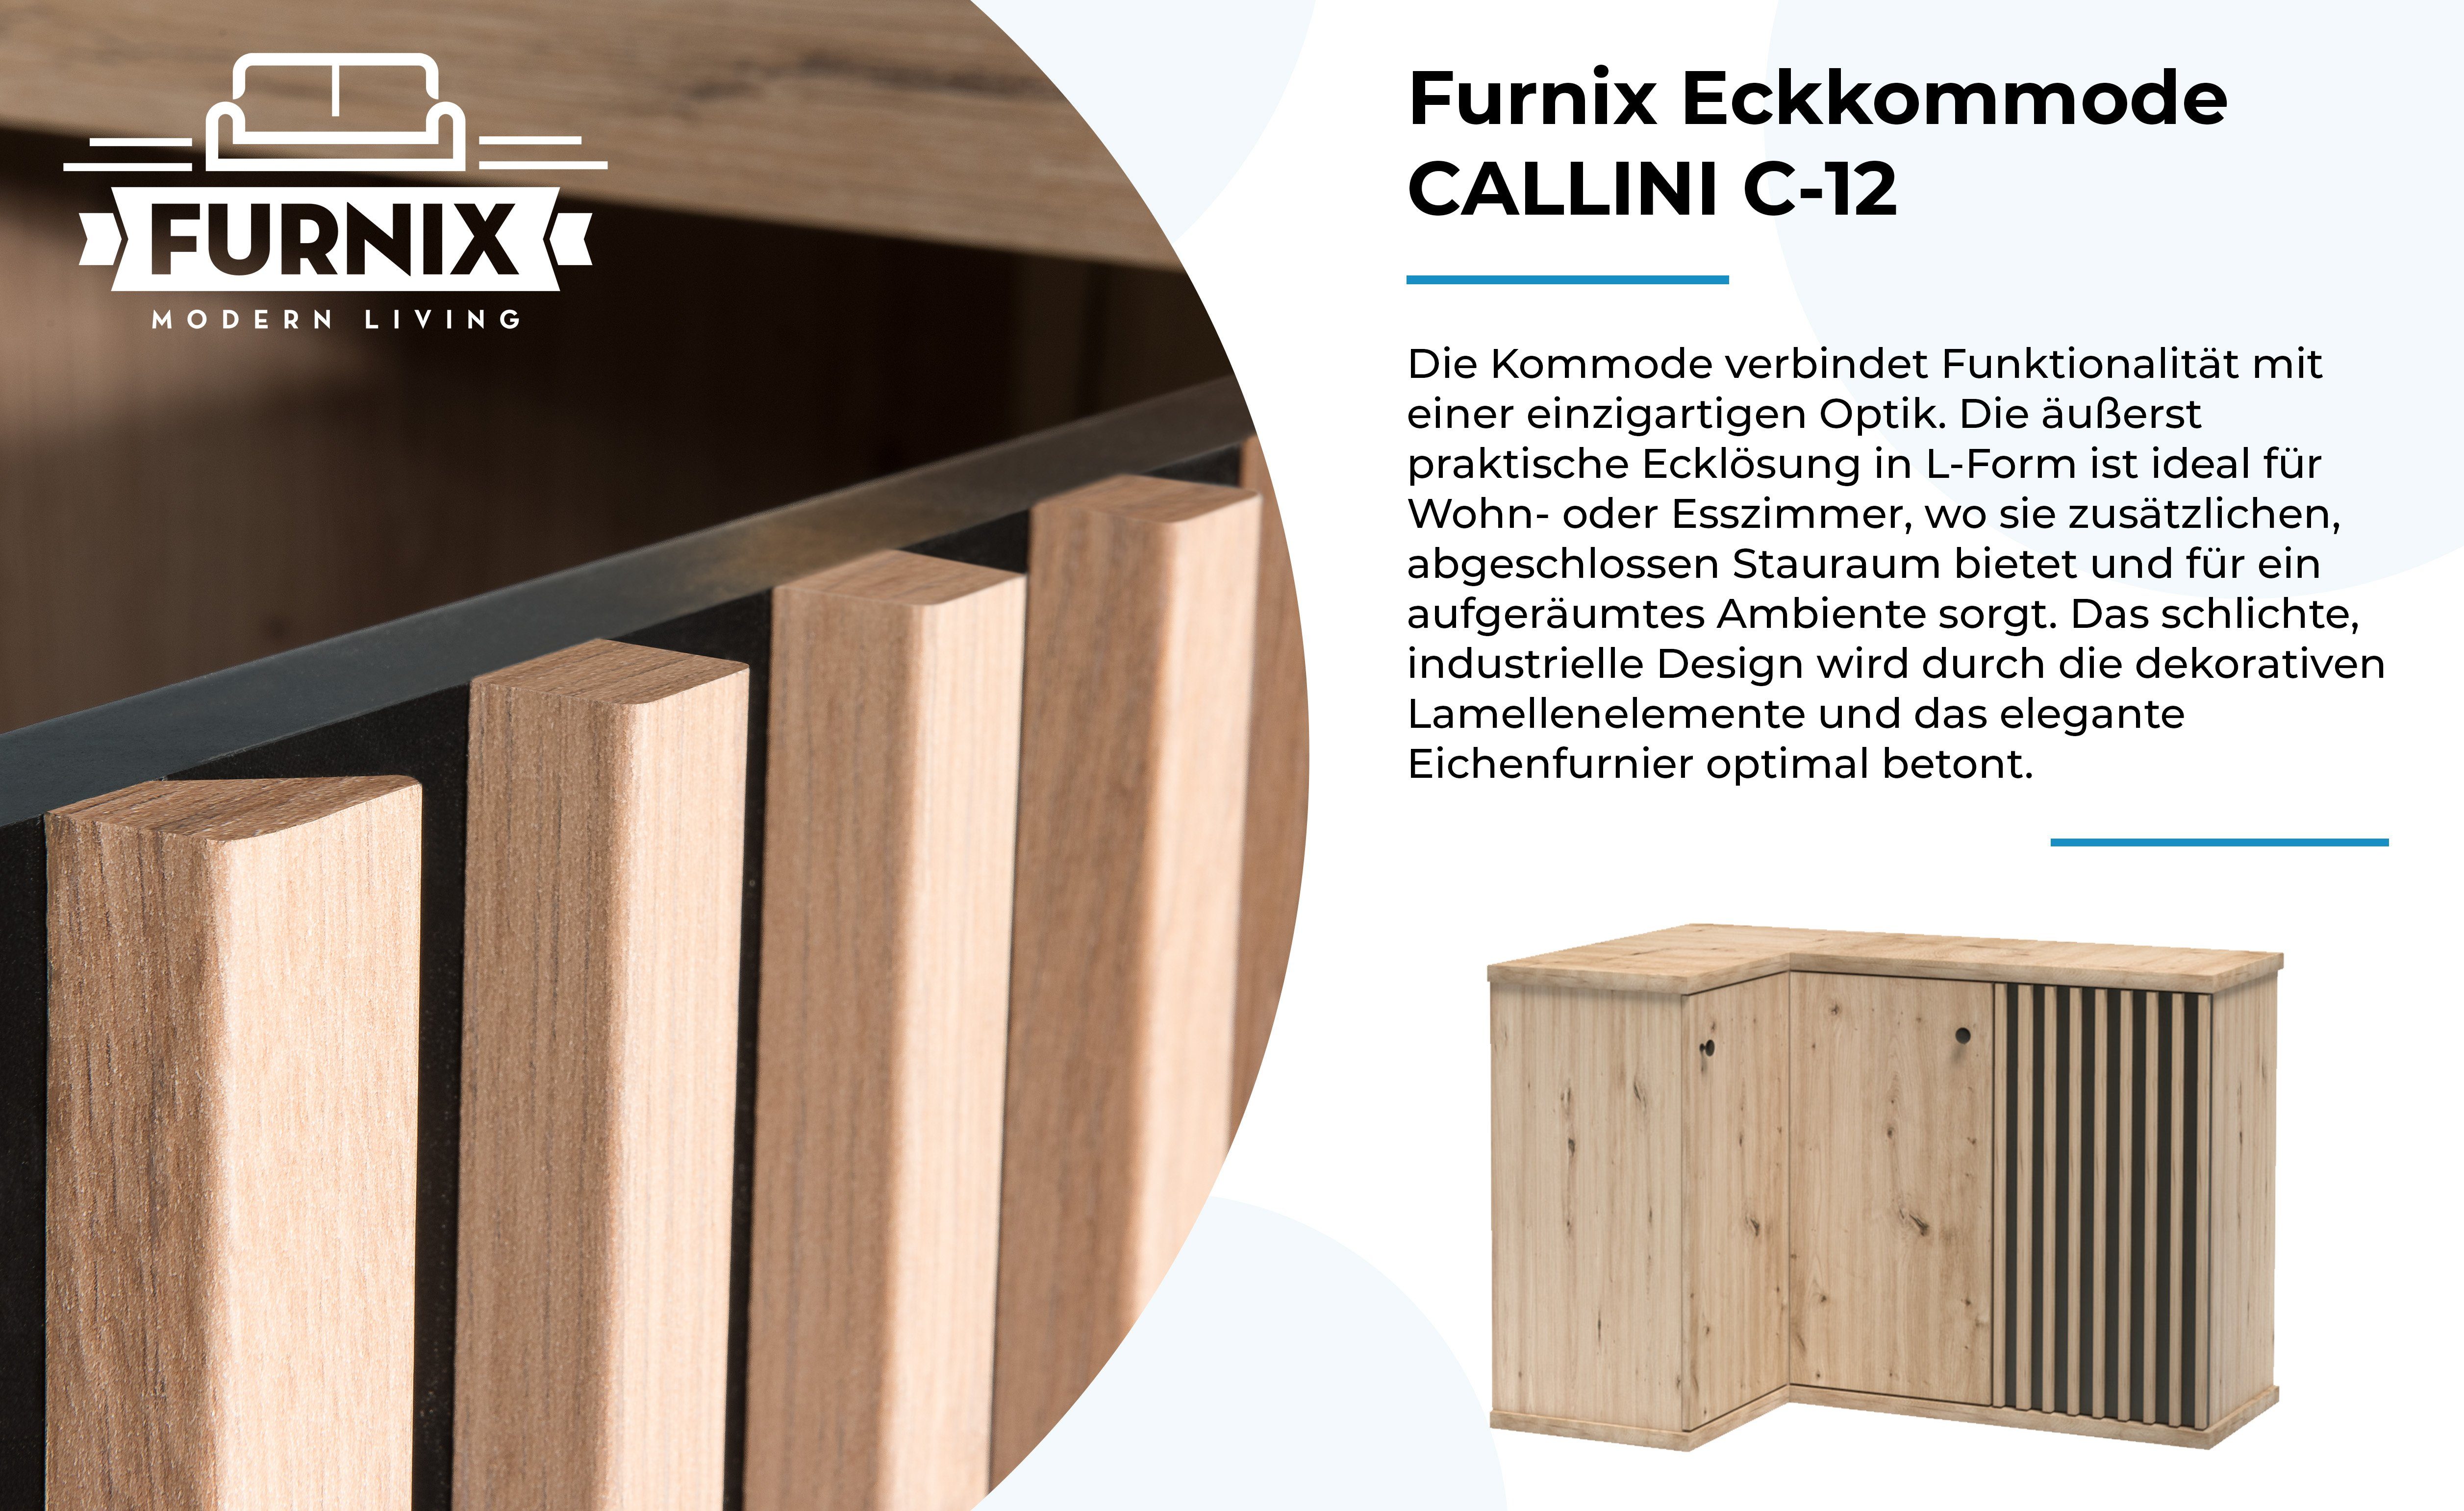 cm Furnix T40,6 L-Form Artisan CALLINI Eckkommode x in Eiche, B122,6 mit H85,4 3 Kommode x C-12 Türen